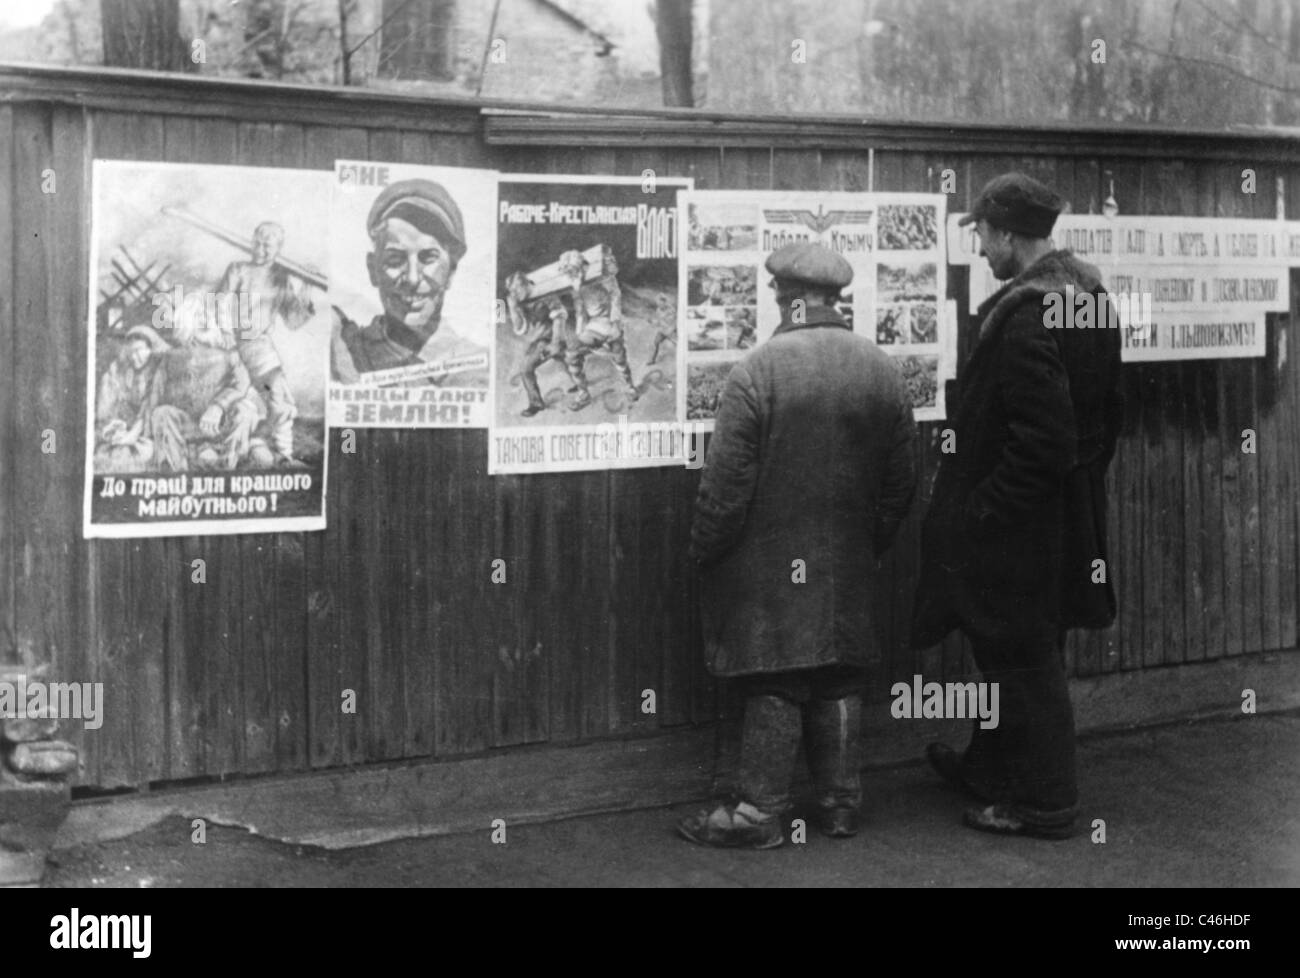 La seconda guerra mondiale: Tedesco Propaganda nazista occupato in Unione Sovietica Foto Stock